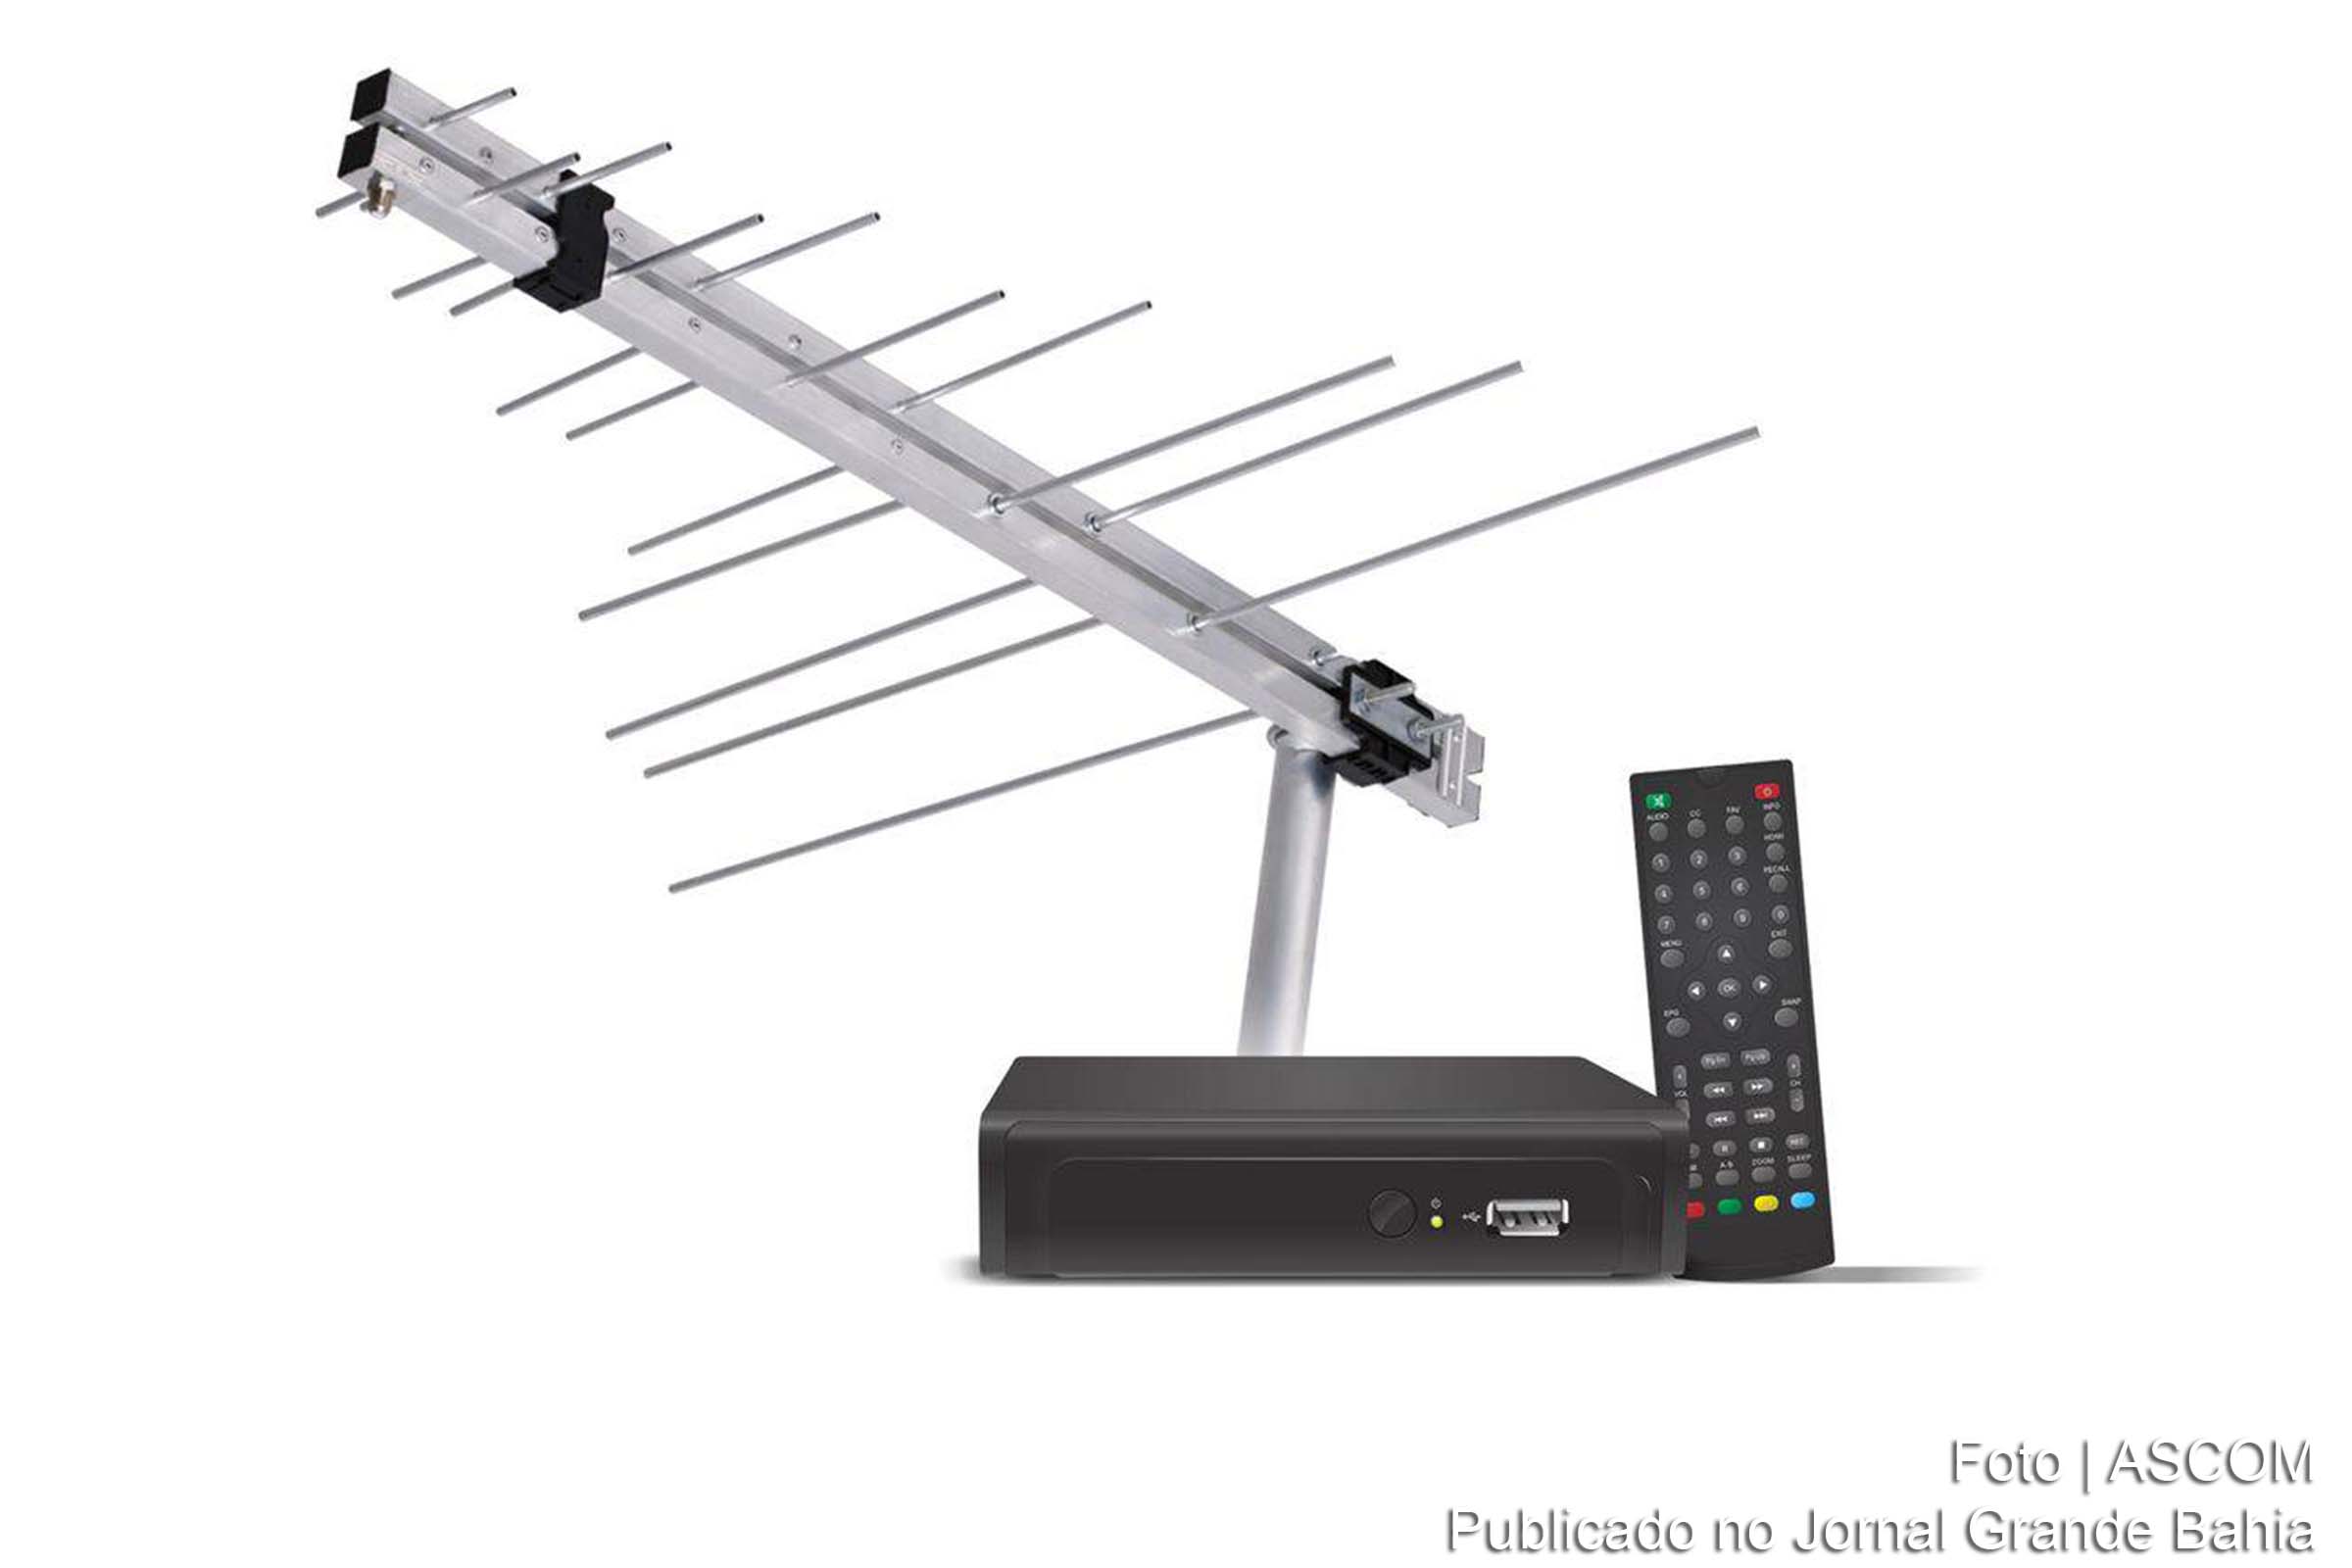 O kit da TV Digital está sendo distribuído para quem não tem condições de adquirir um aparelho de TV moderno ou comprar um conversor.